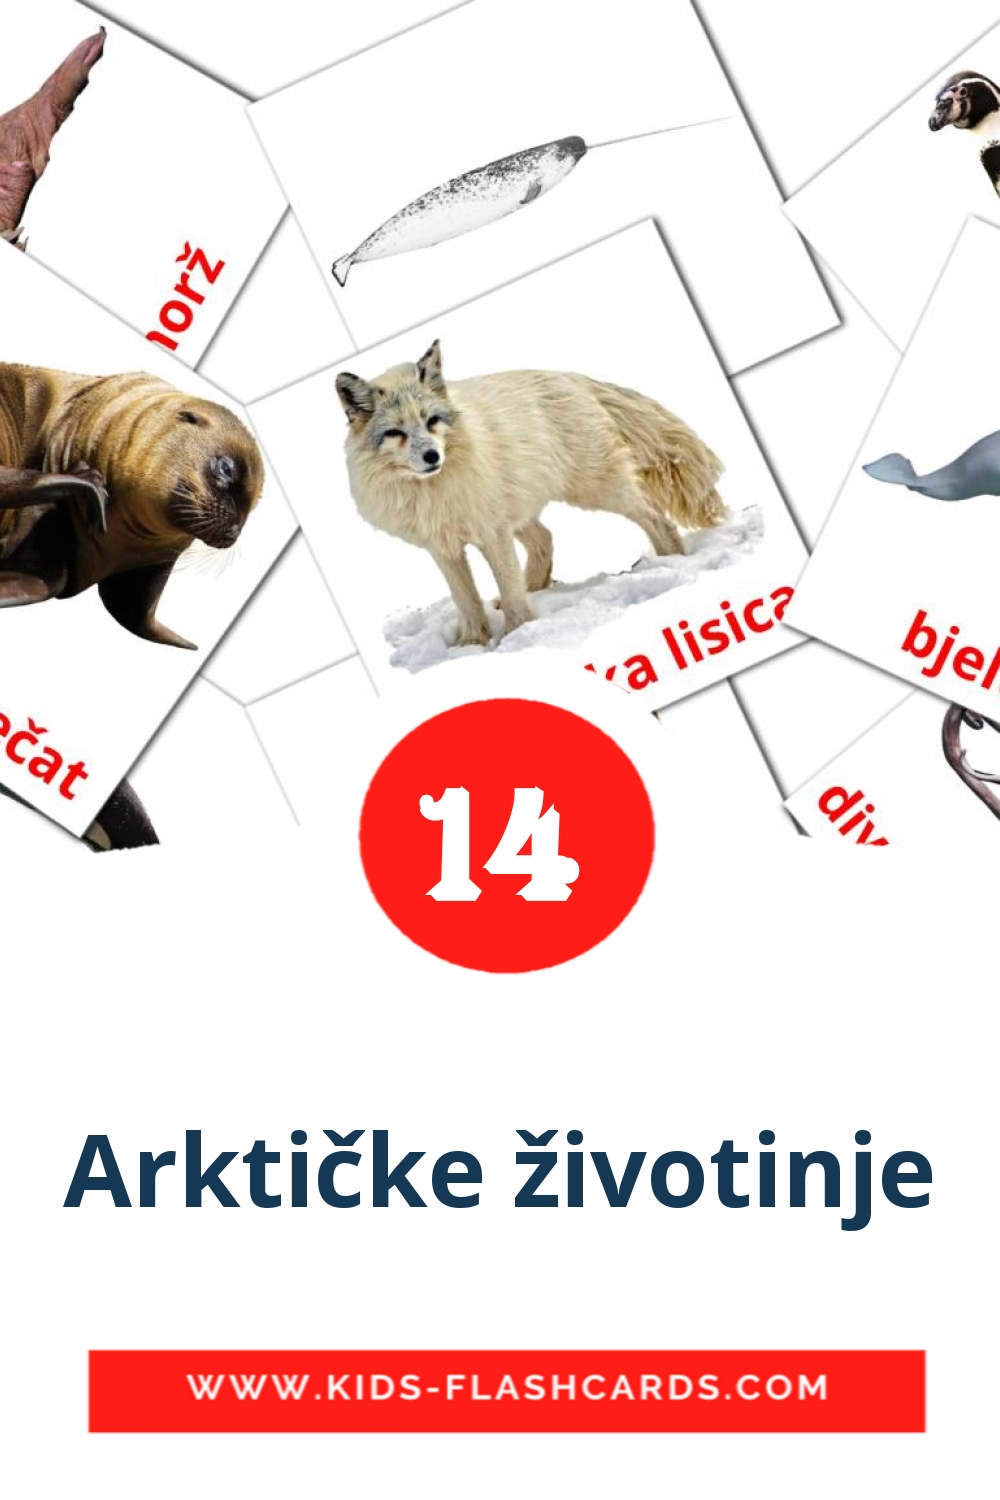 14 Cartões com Imagens de Arktičke životinje para Jardim de Infância em croata